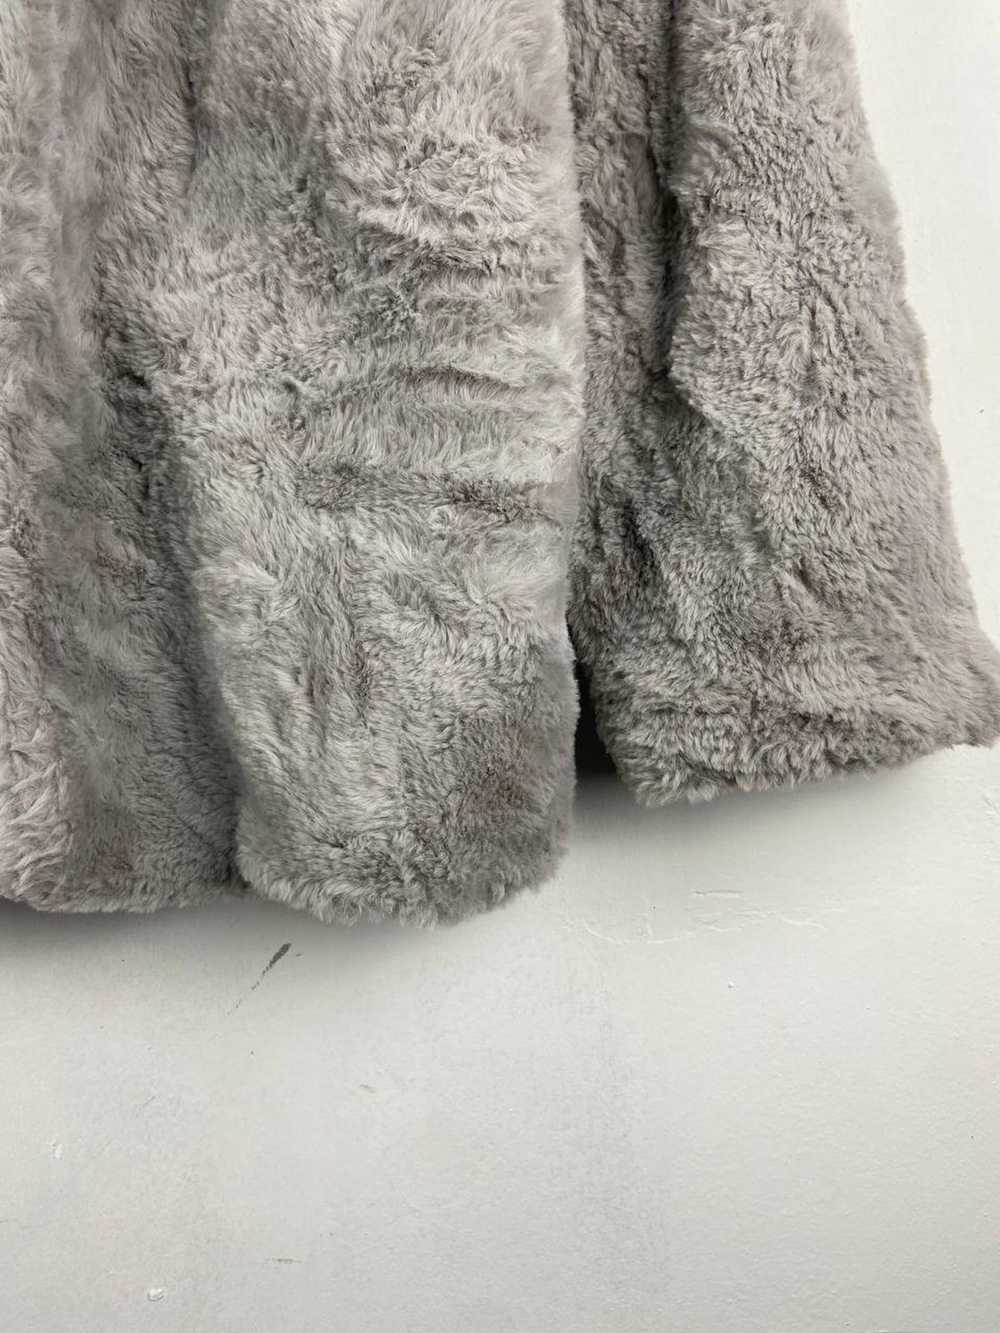 Cardigan × Japanese Brand × Mink Fur Coat 🇯🇵 Ja… - image 11